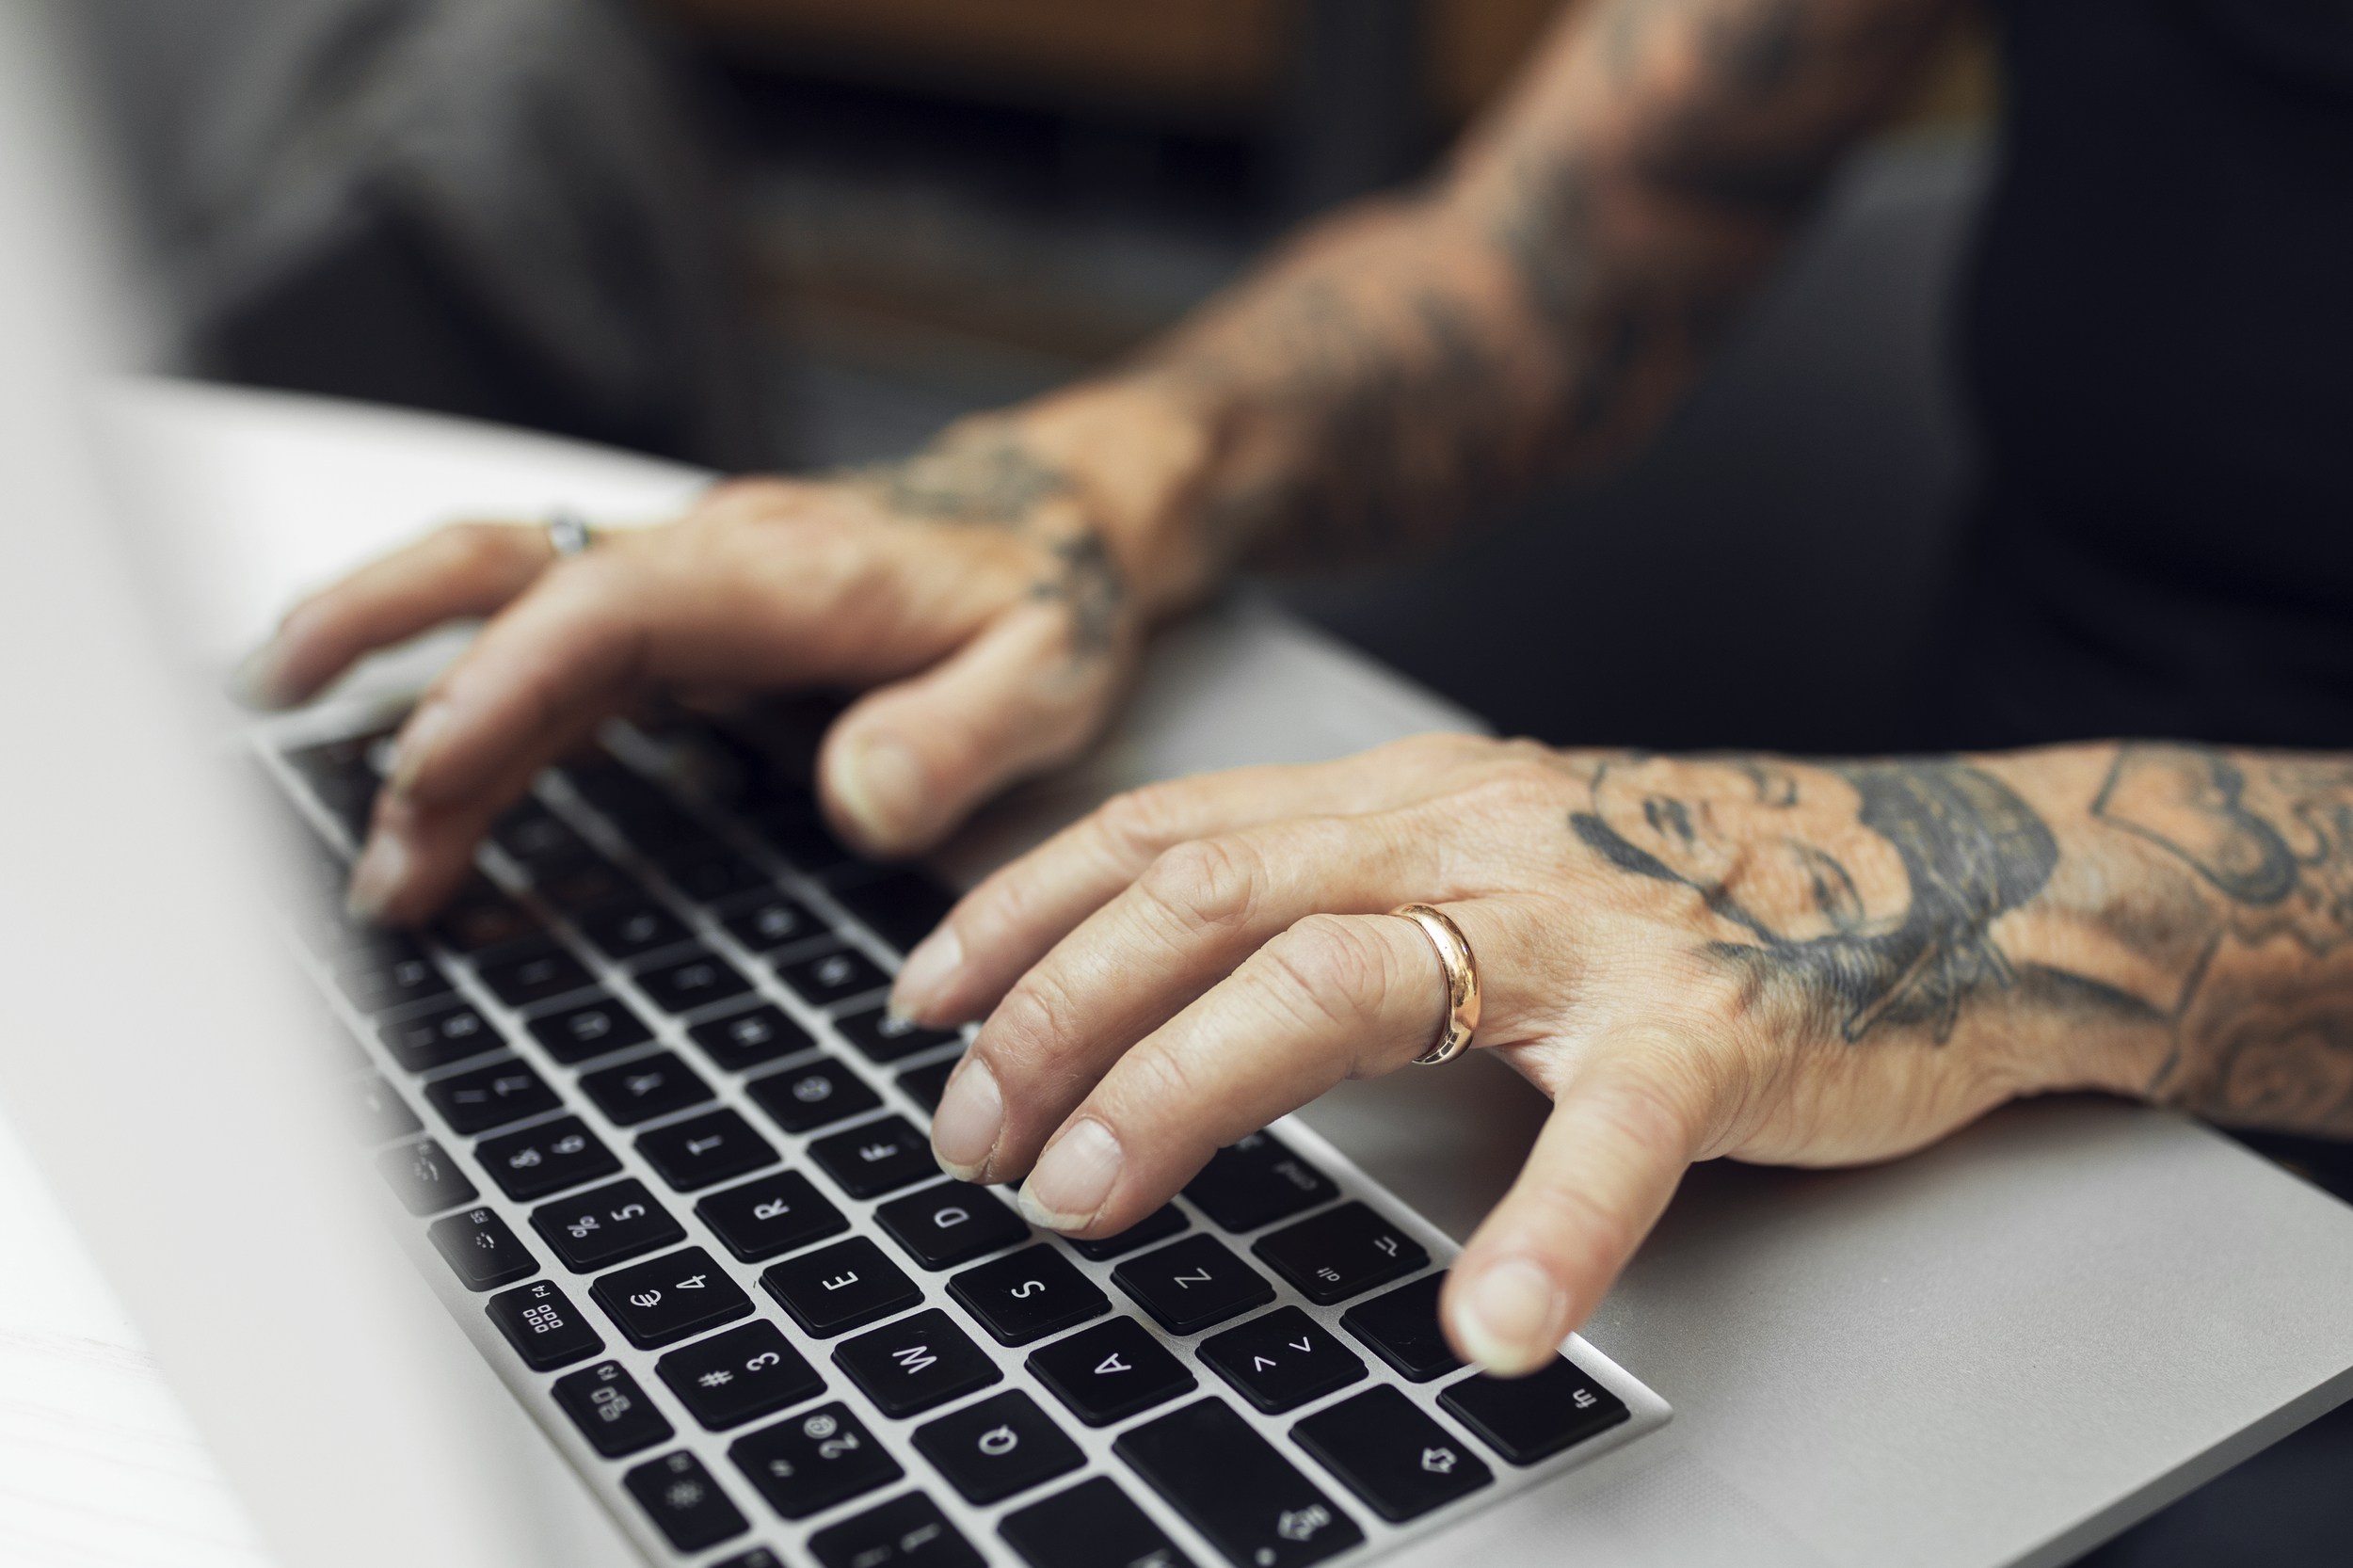 tattooed hands on keyboard